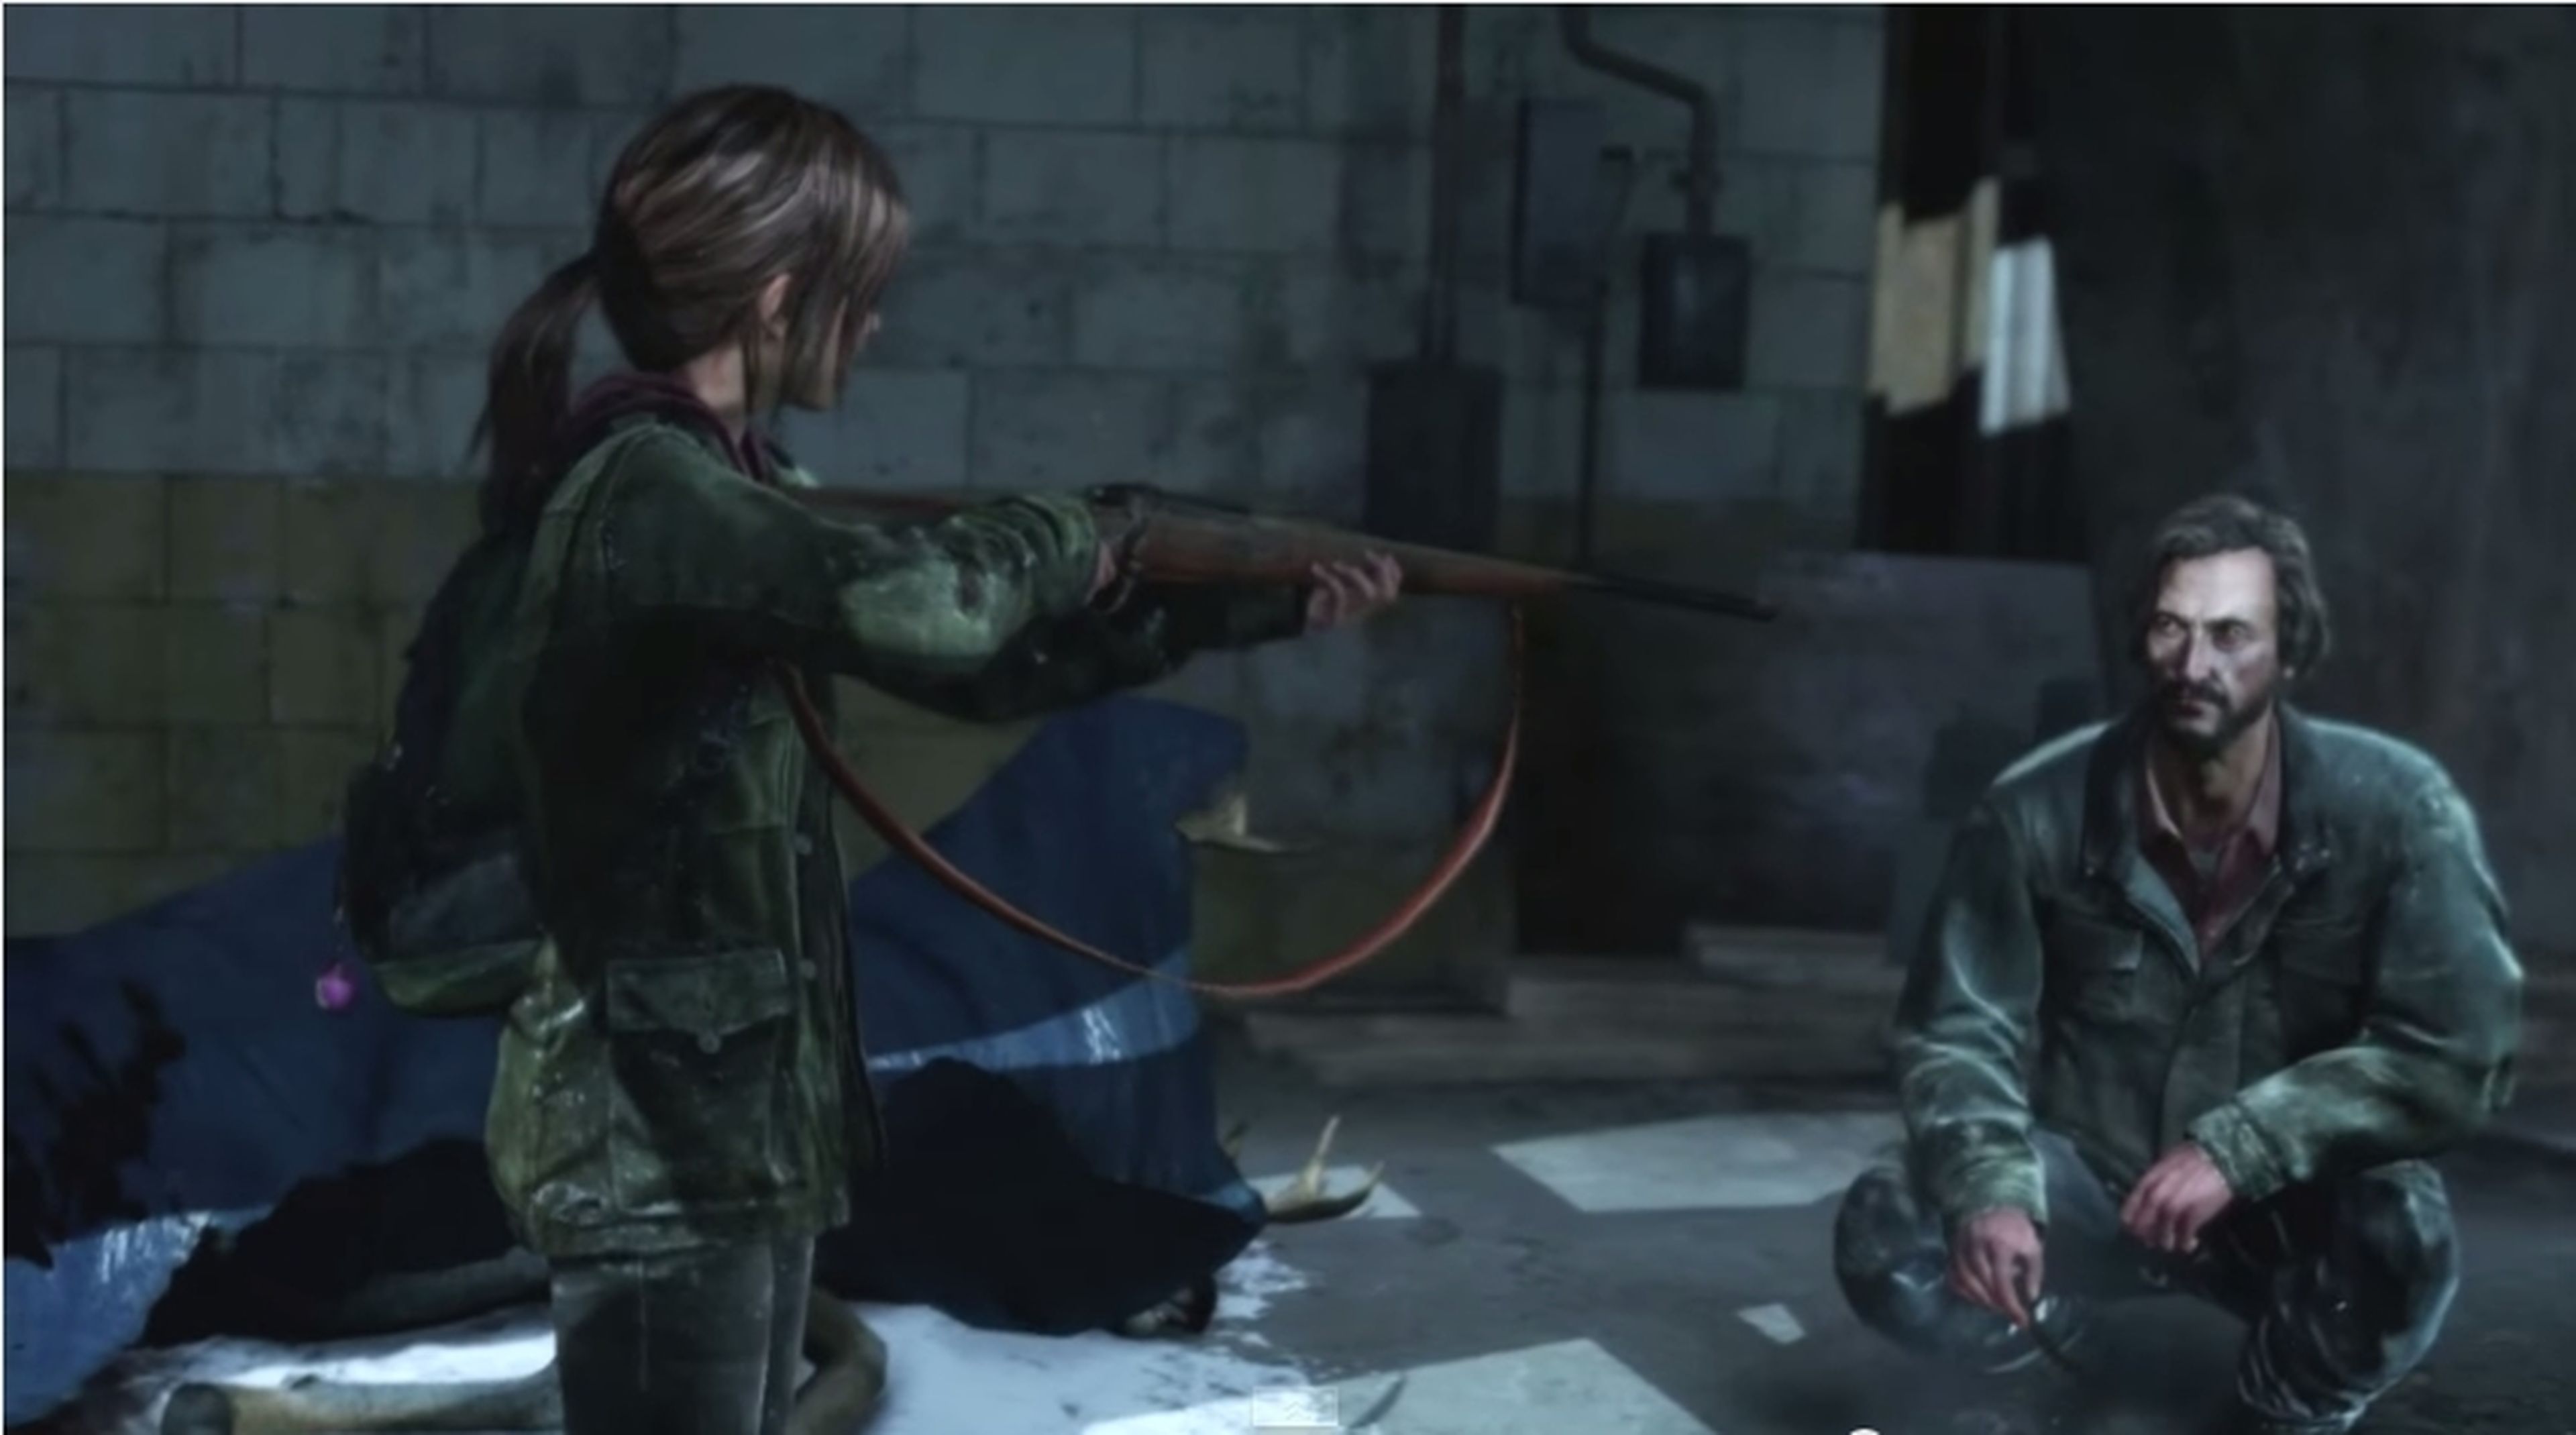 Comparativa de pantallas de The Last of Us en PS4 y PS3